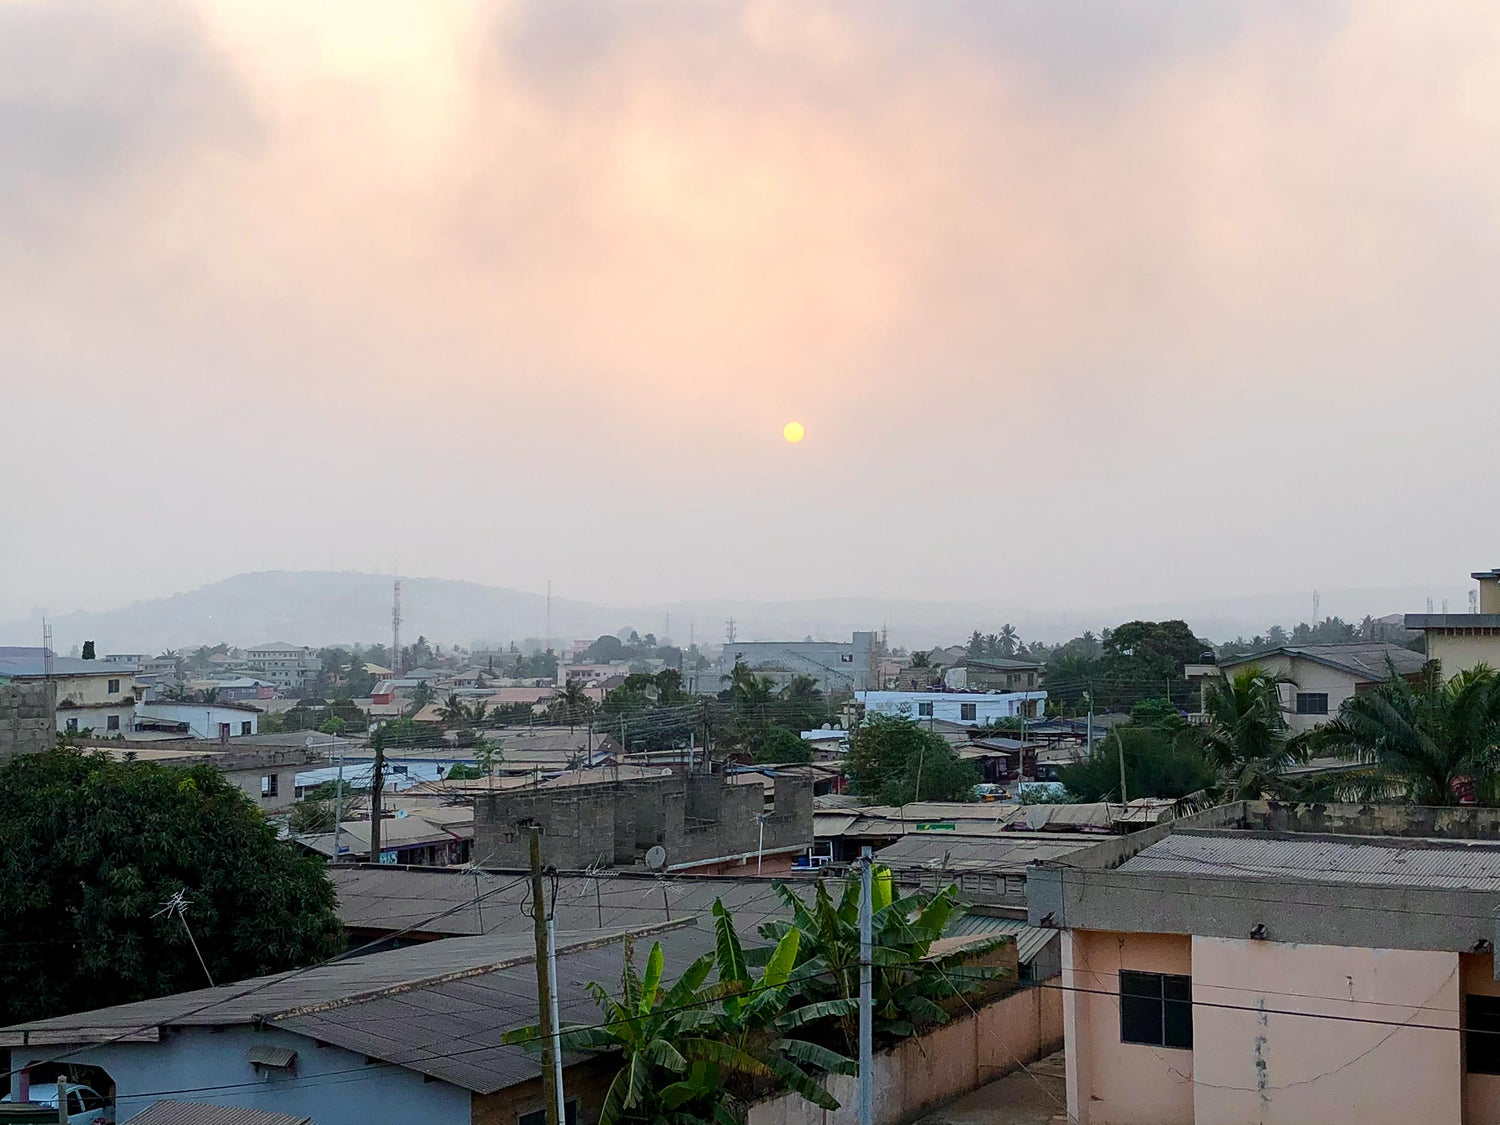 Tagebuch Ghana: Auf der Suche nach Sheabutter aus klarer Herkunft